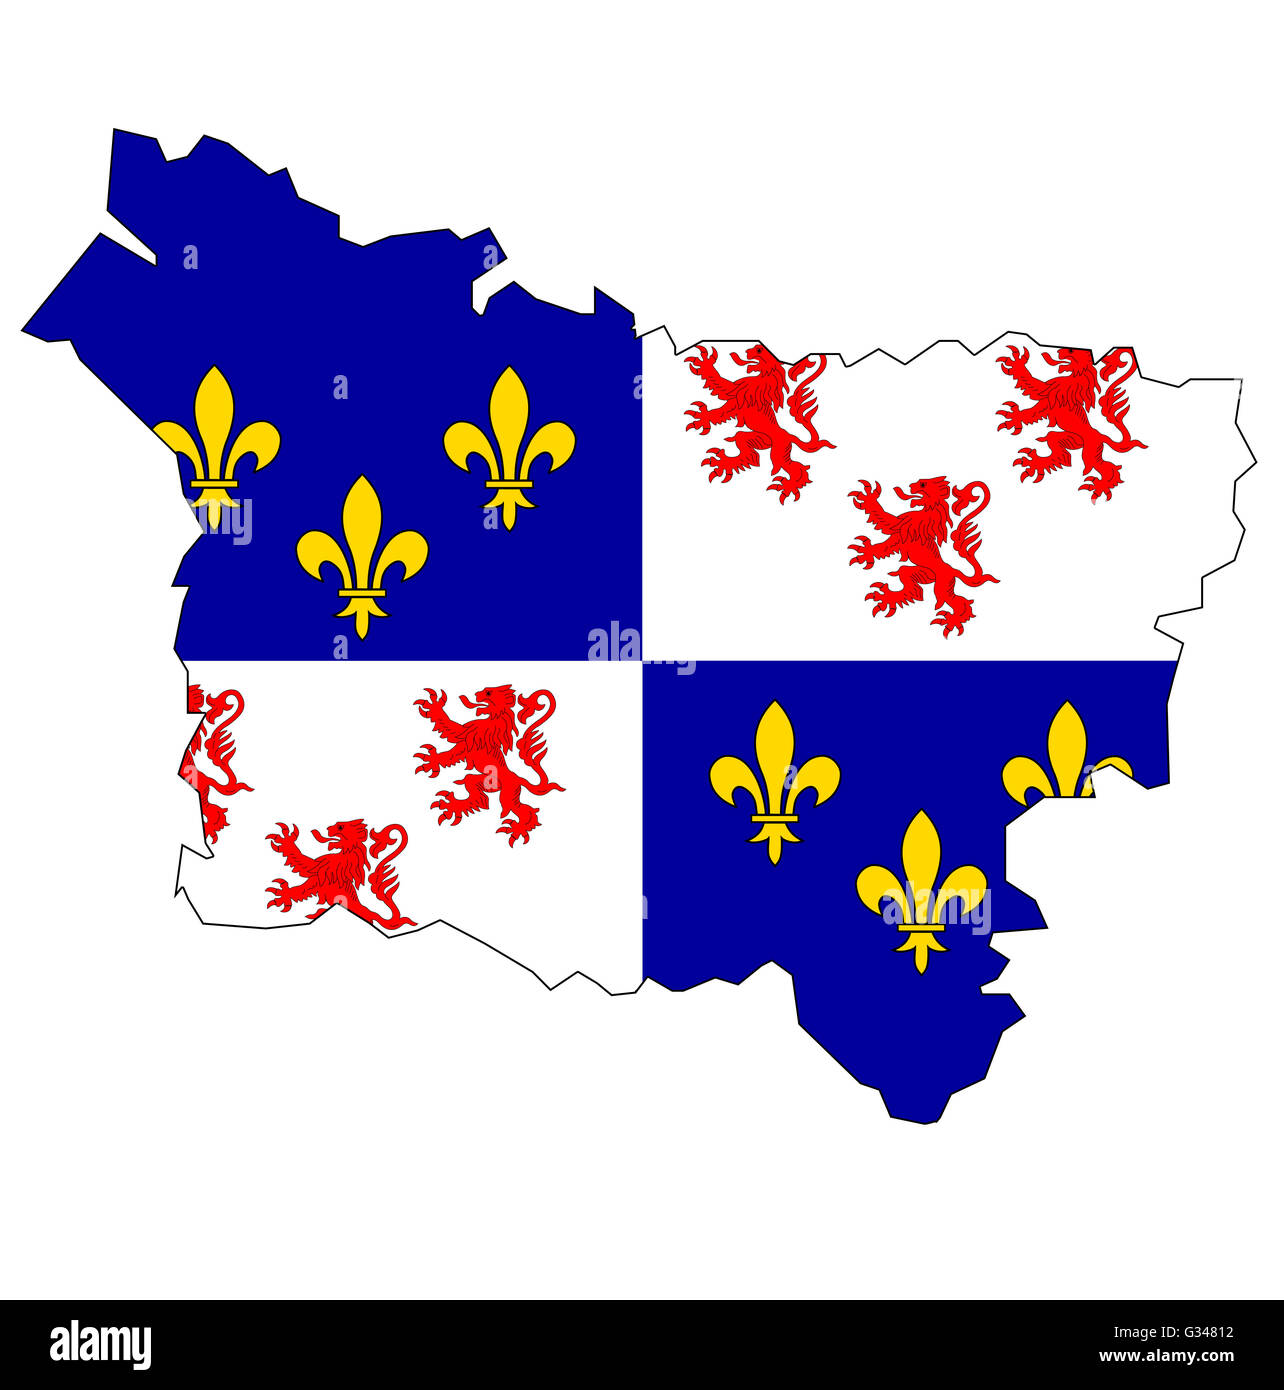 Carte ancienne avec pavillon de département, région administrative de la France a appelé picardie Banque D'Images